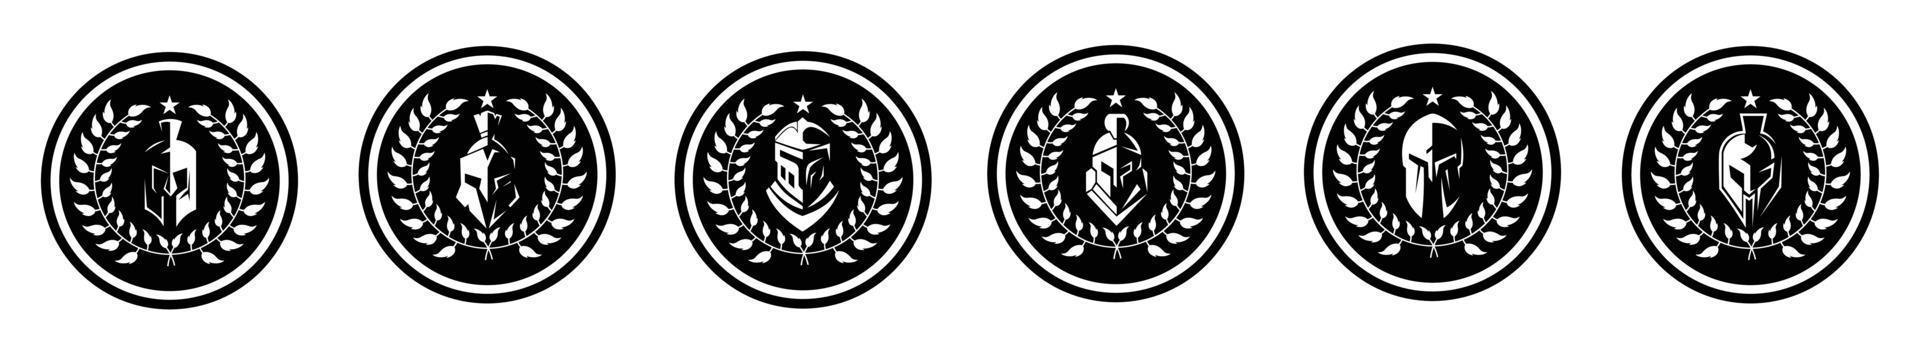 médaillon avec casque sparte spartiate pour vecteur de conception de logo de guerrier grec